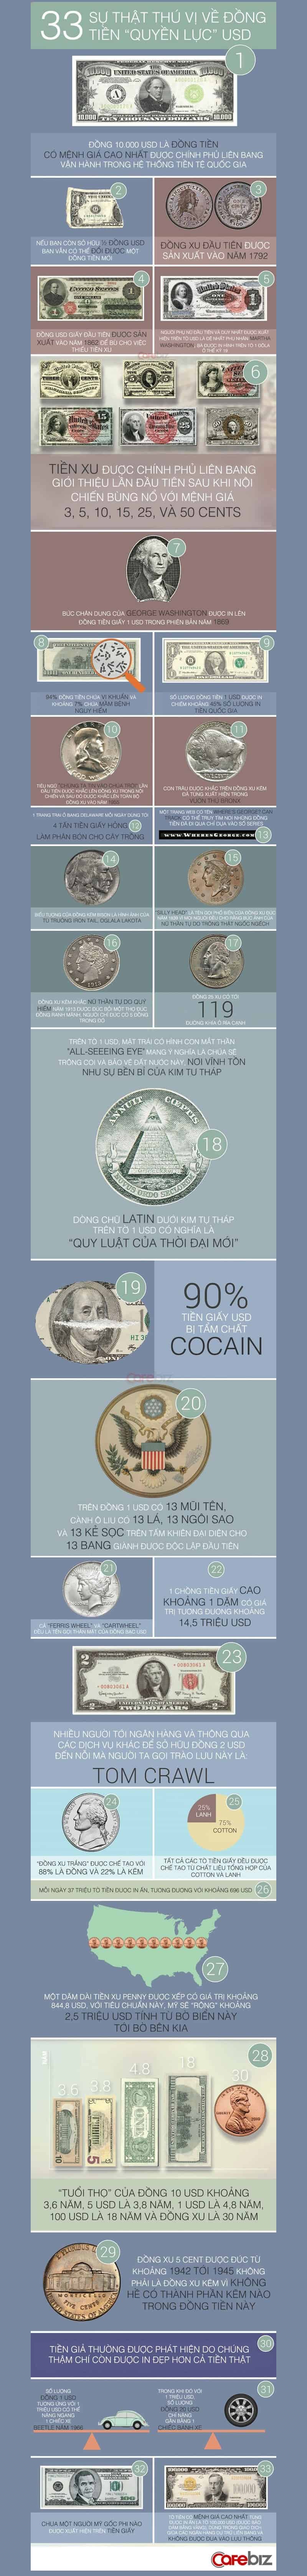 Infographic - Đồng Dolar và Những Điều Chưa Biết